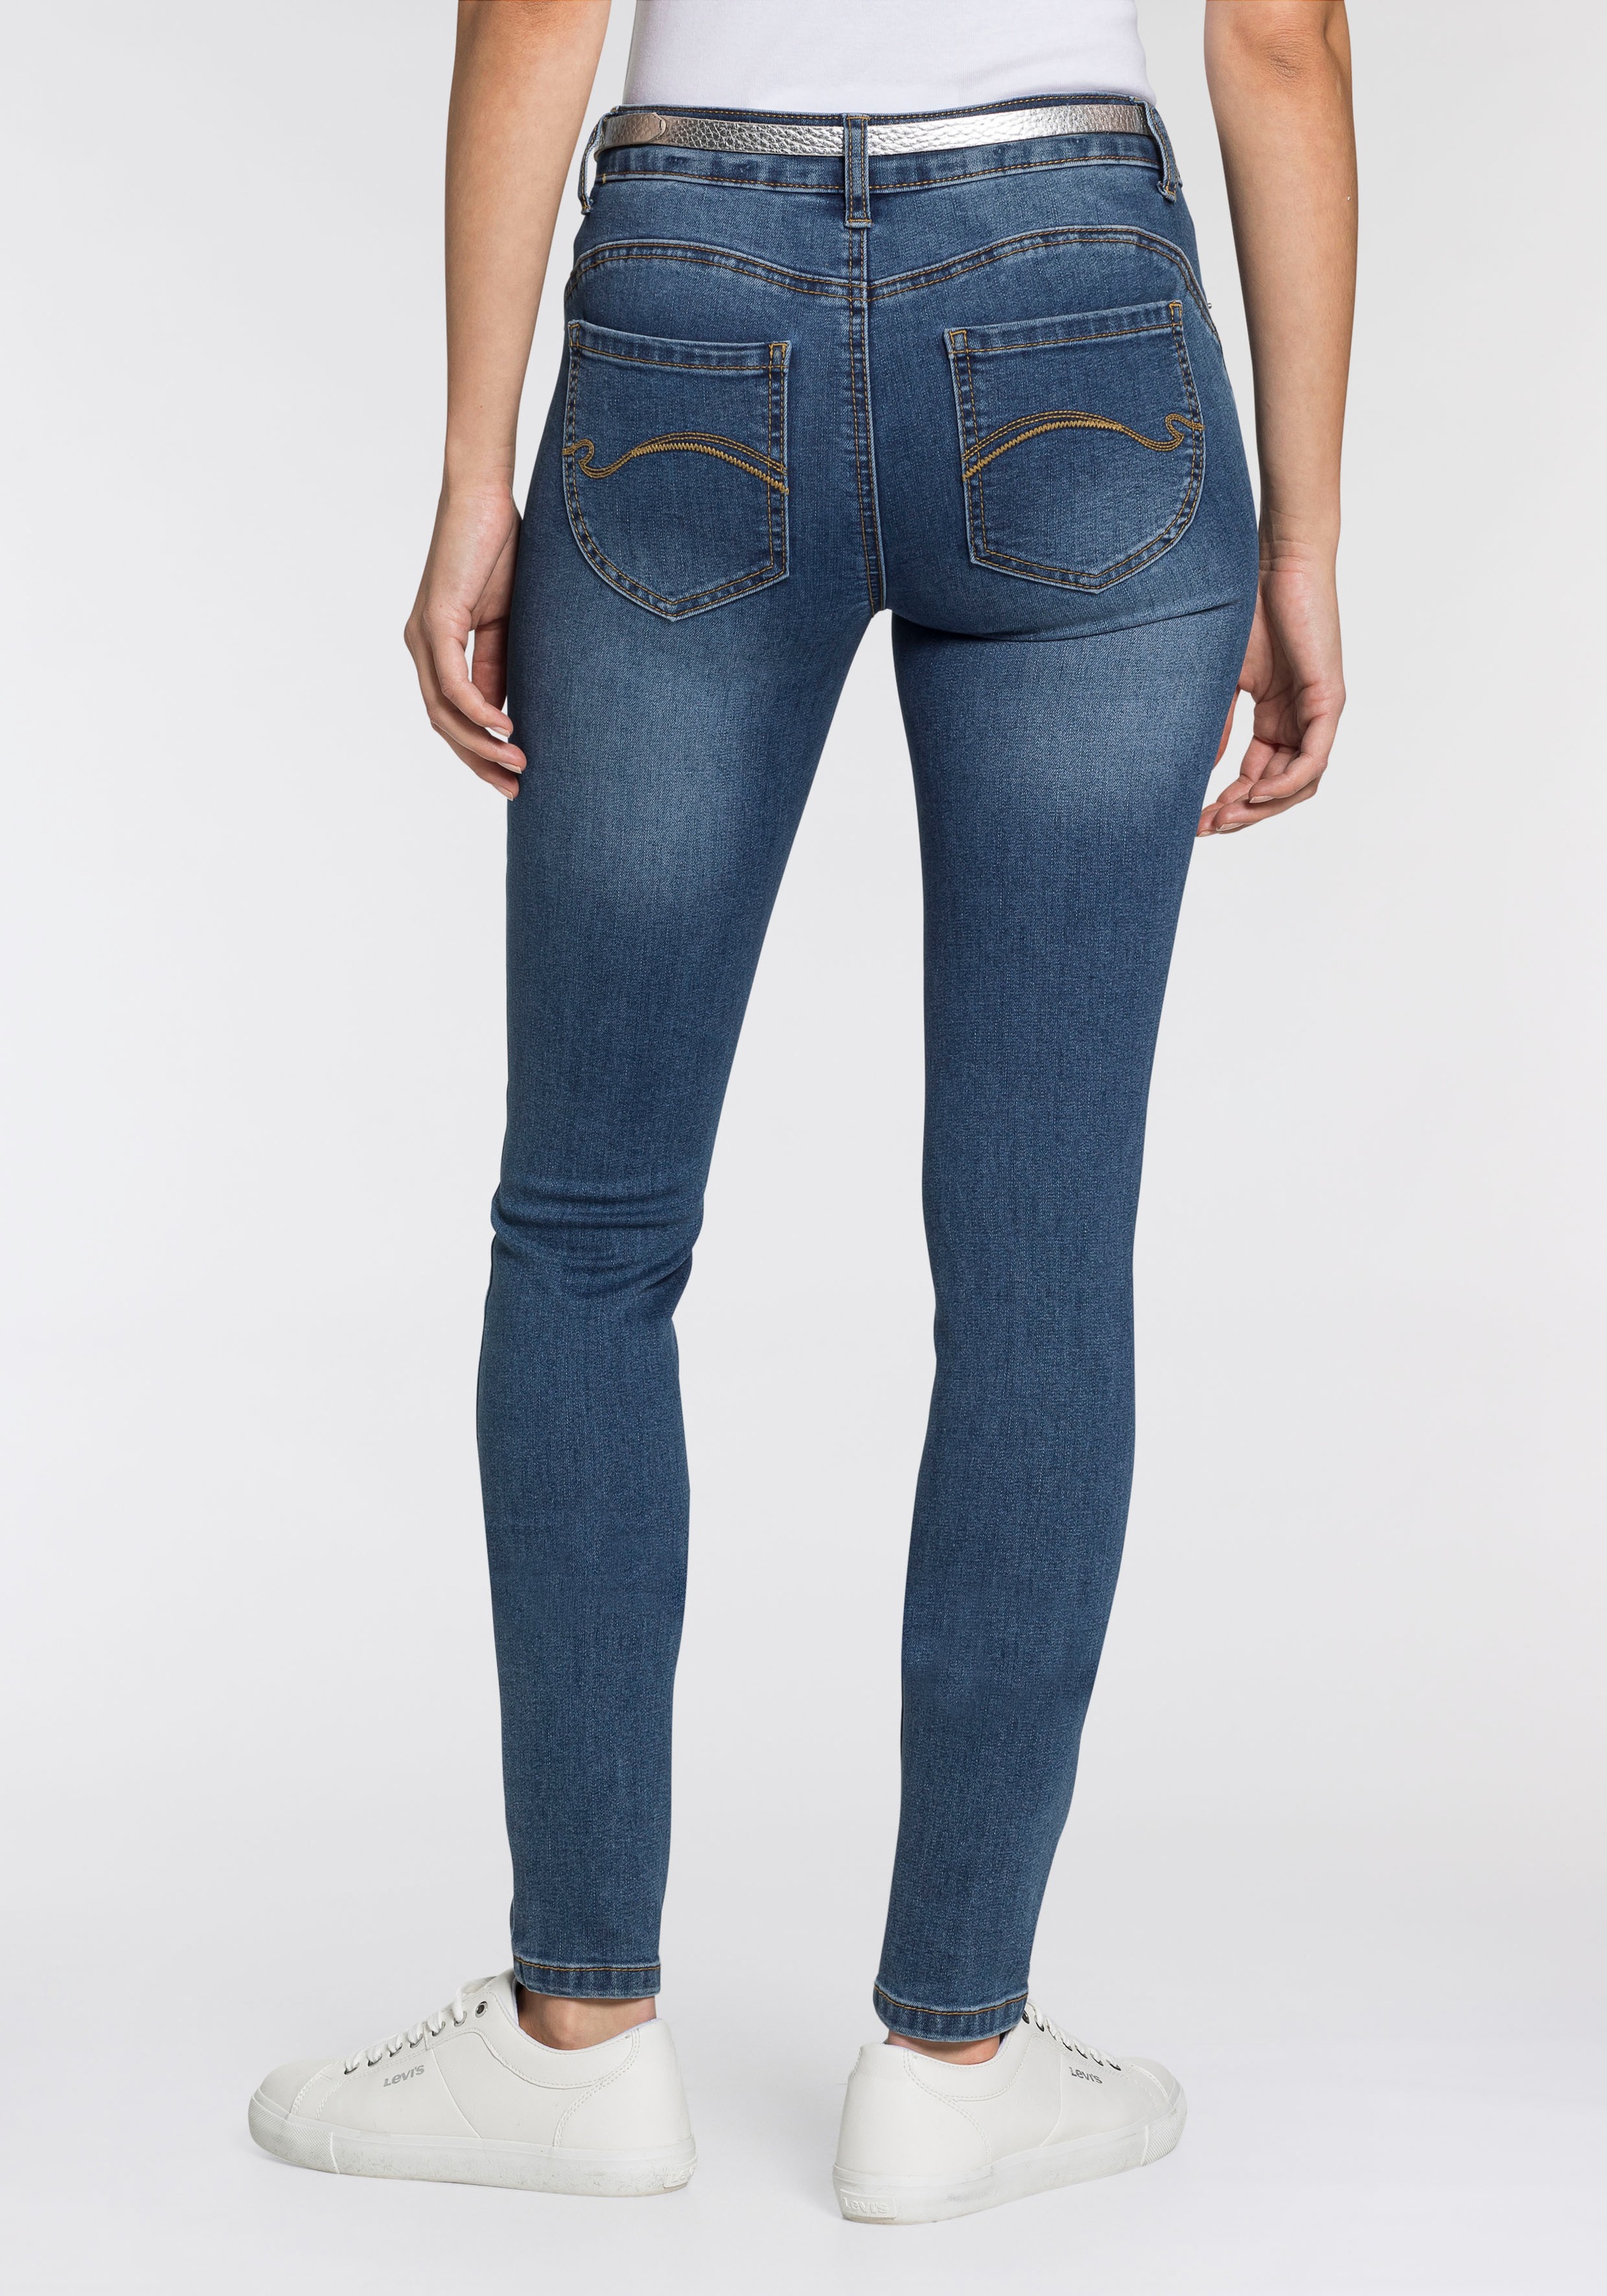 KangaROOS Shaping-Effekt SKINNY«, 5-Pocket-Jeans BAUR kaufen »PUSH-UP mit |